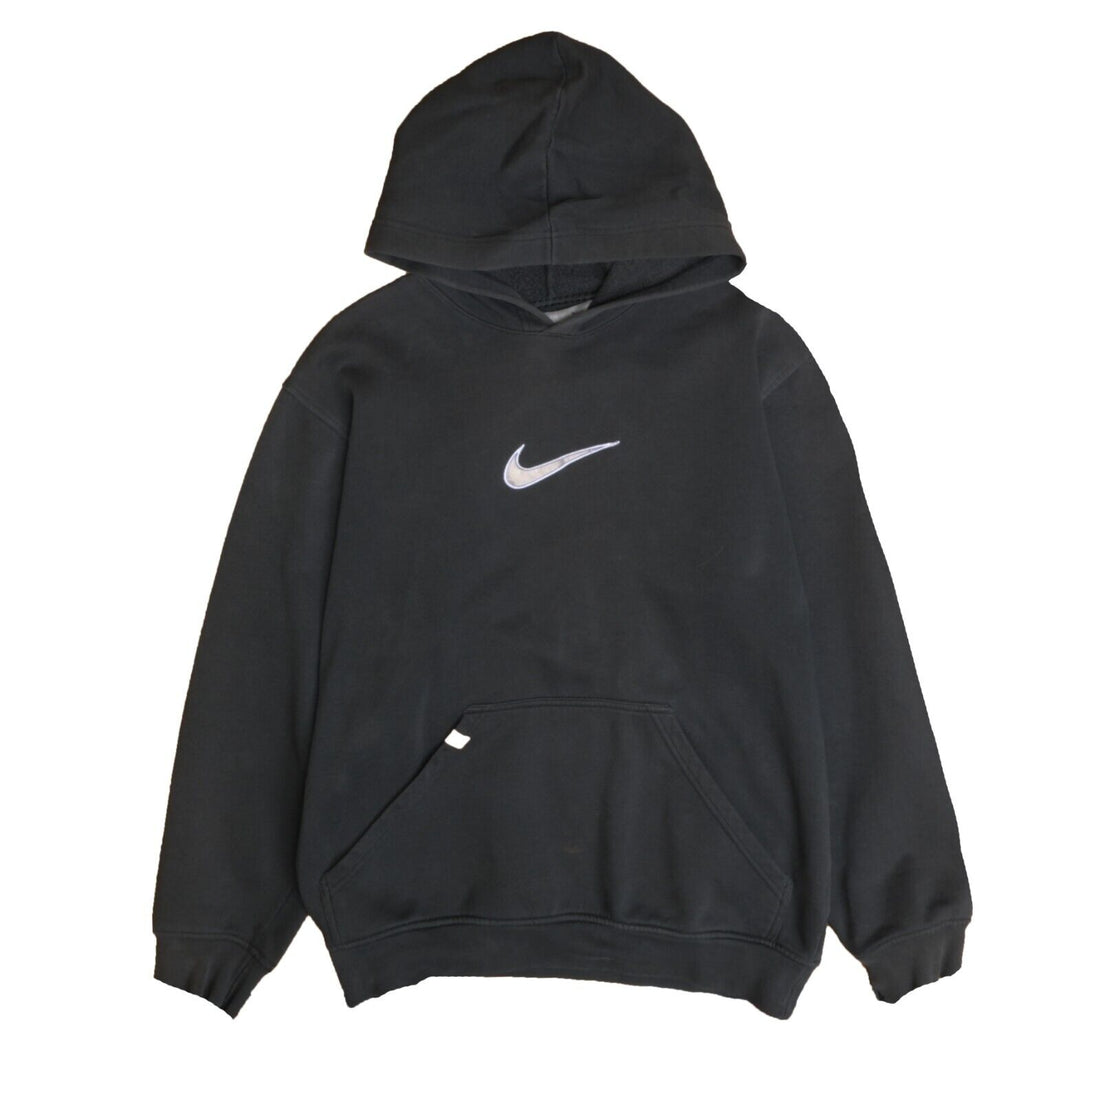 Vintage Nike Sweatshirt Hoodie Size Medium Black Swoosh